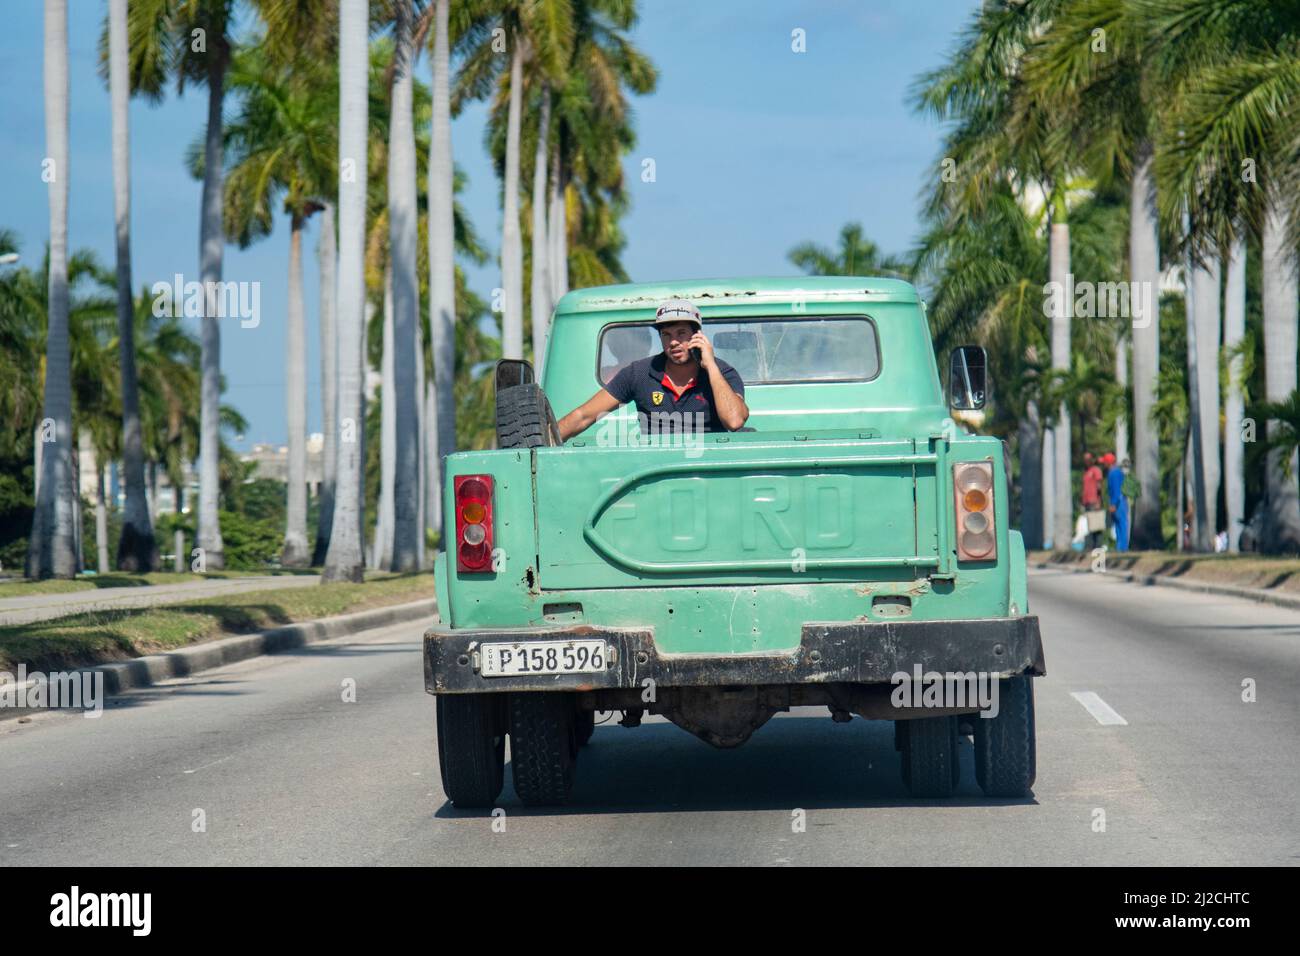 Il giovane uomo cubano corre sul retro di un camion pick up attraverso una strada a l'Avana, Cuba parlando sul suo cellulare. Foto Stock